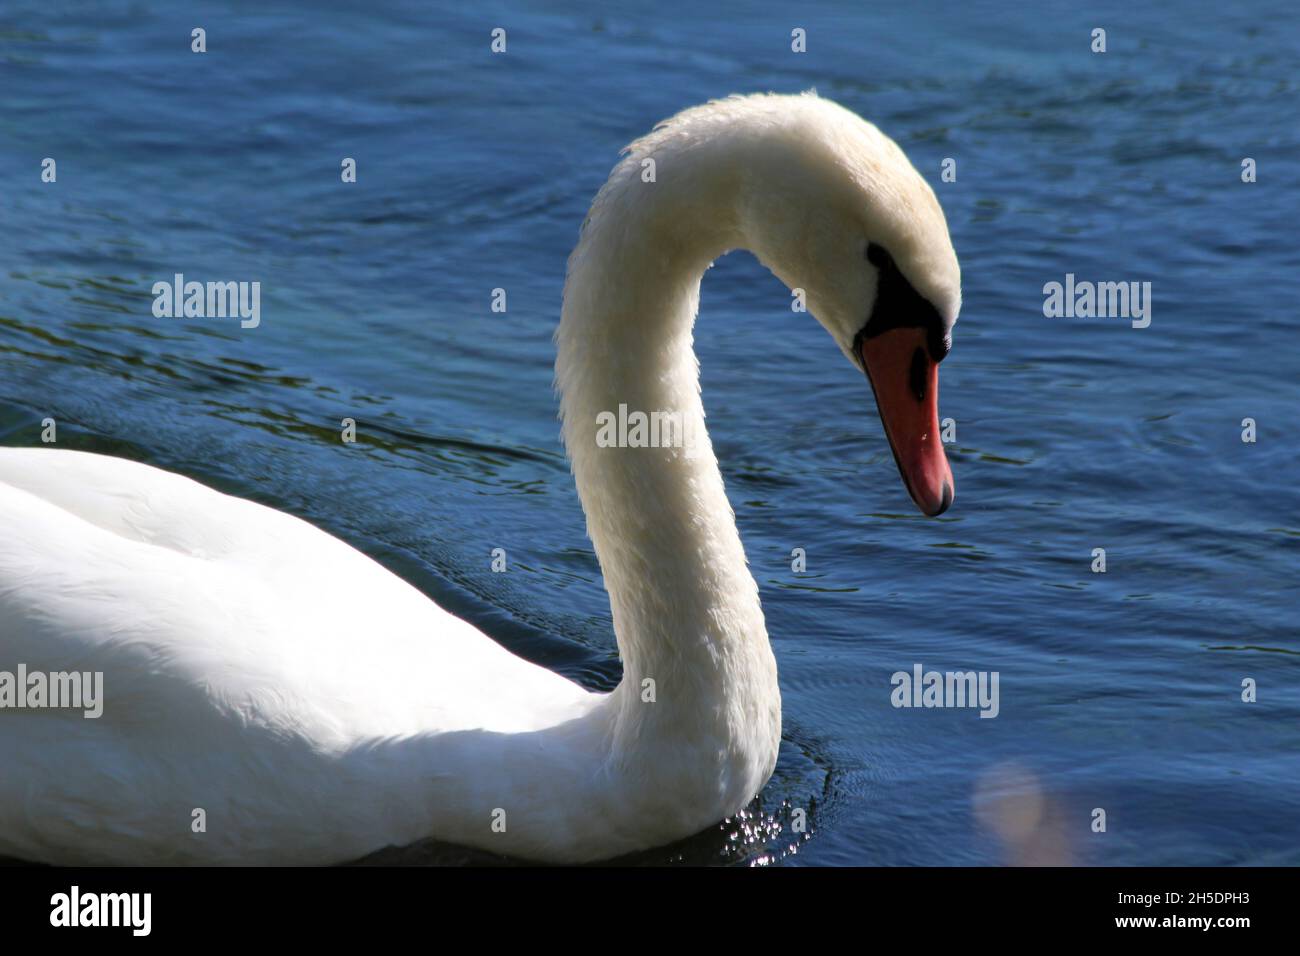 mute swan Stock Photo